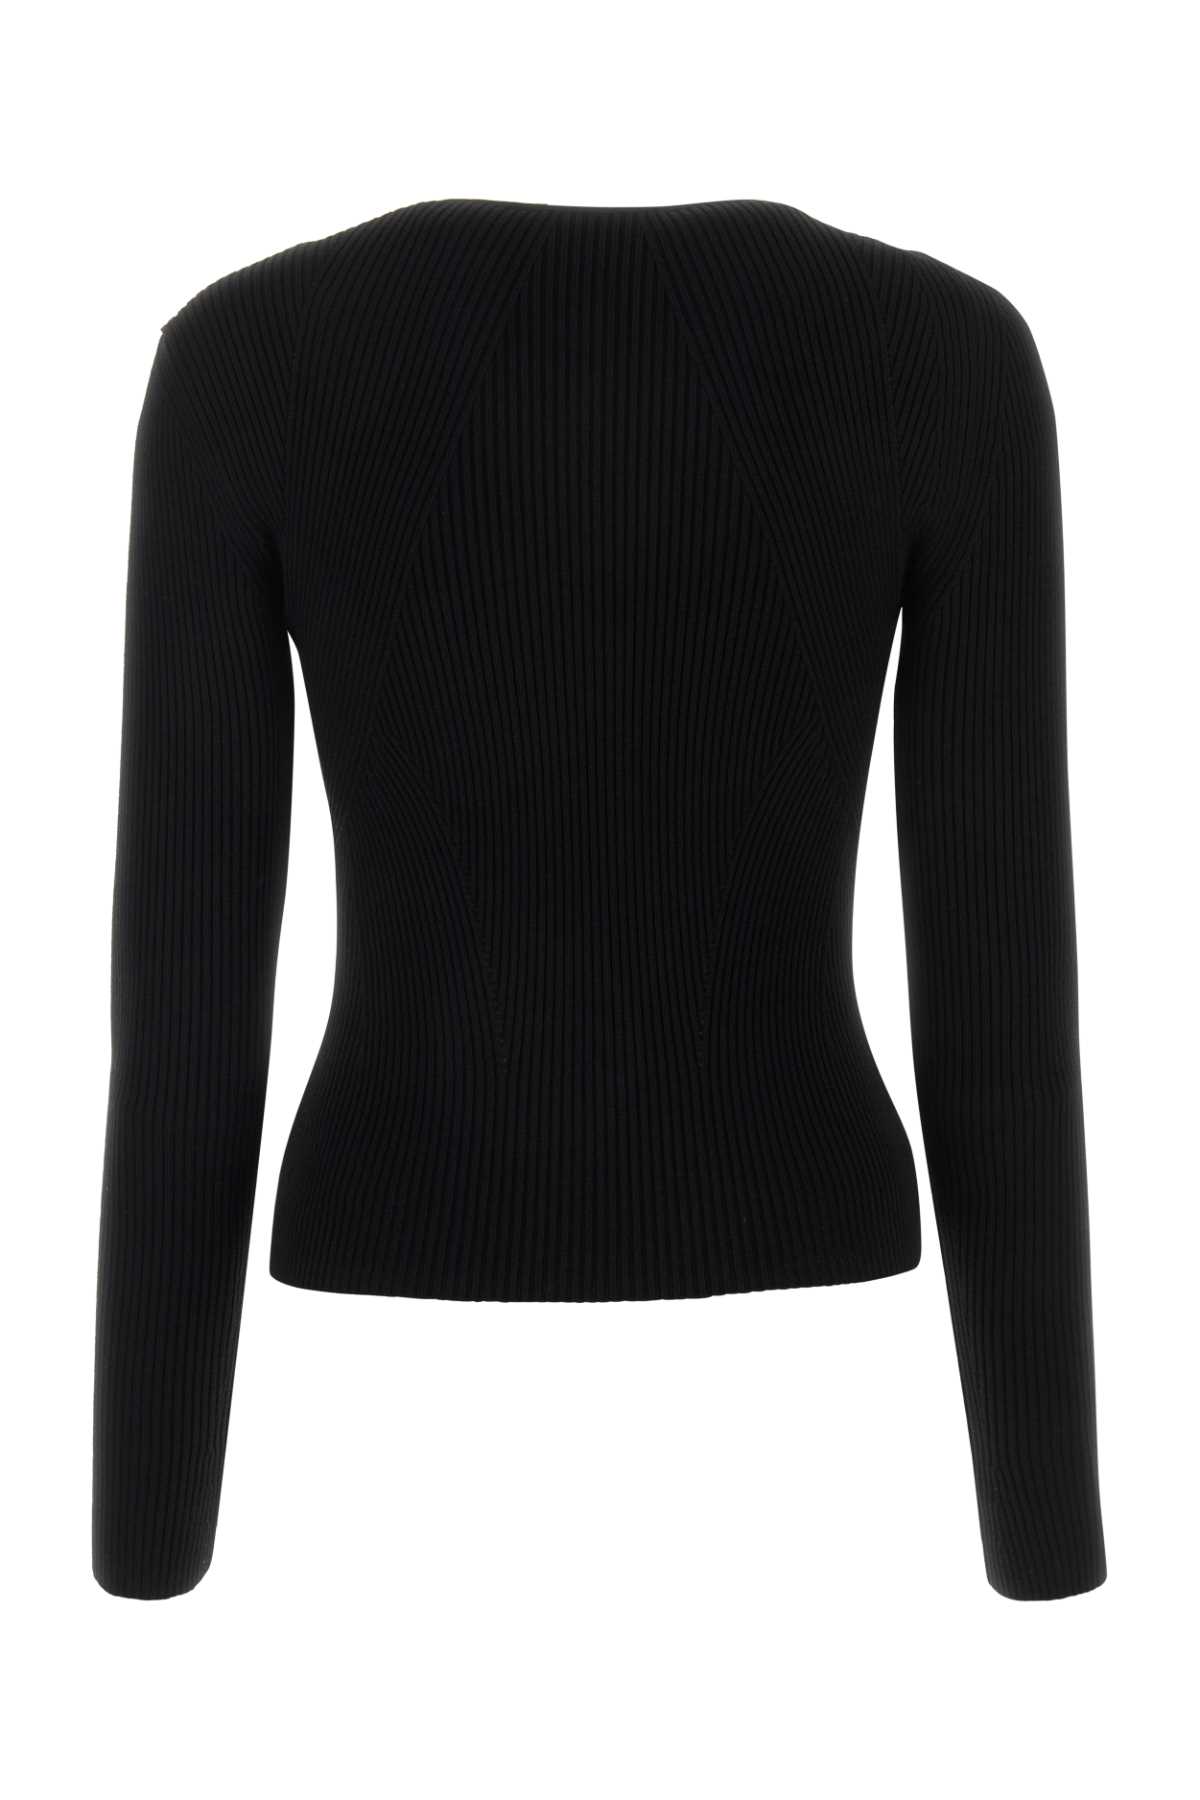 Alexander Mcqueen Black Wool Blend Sweater